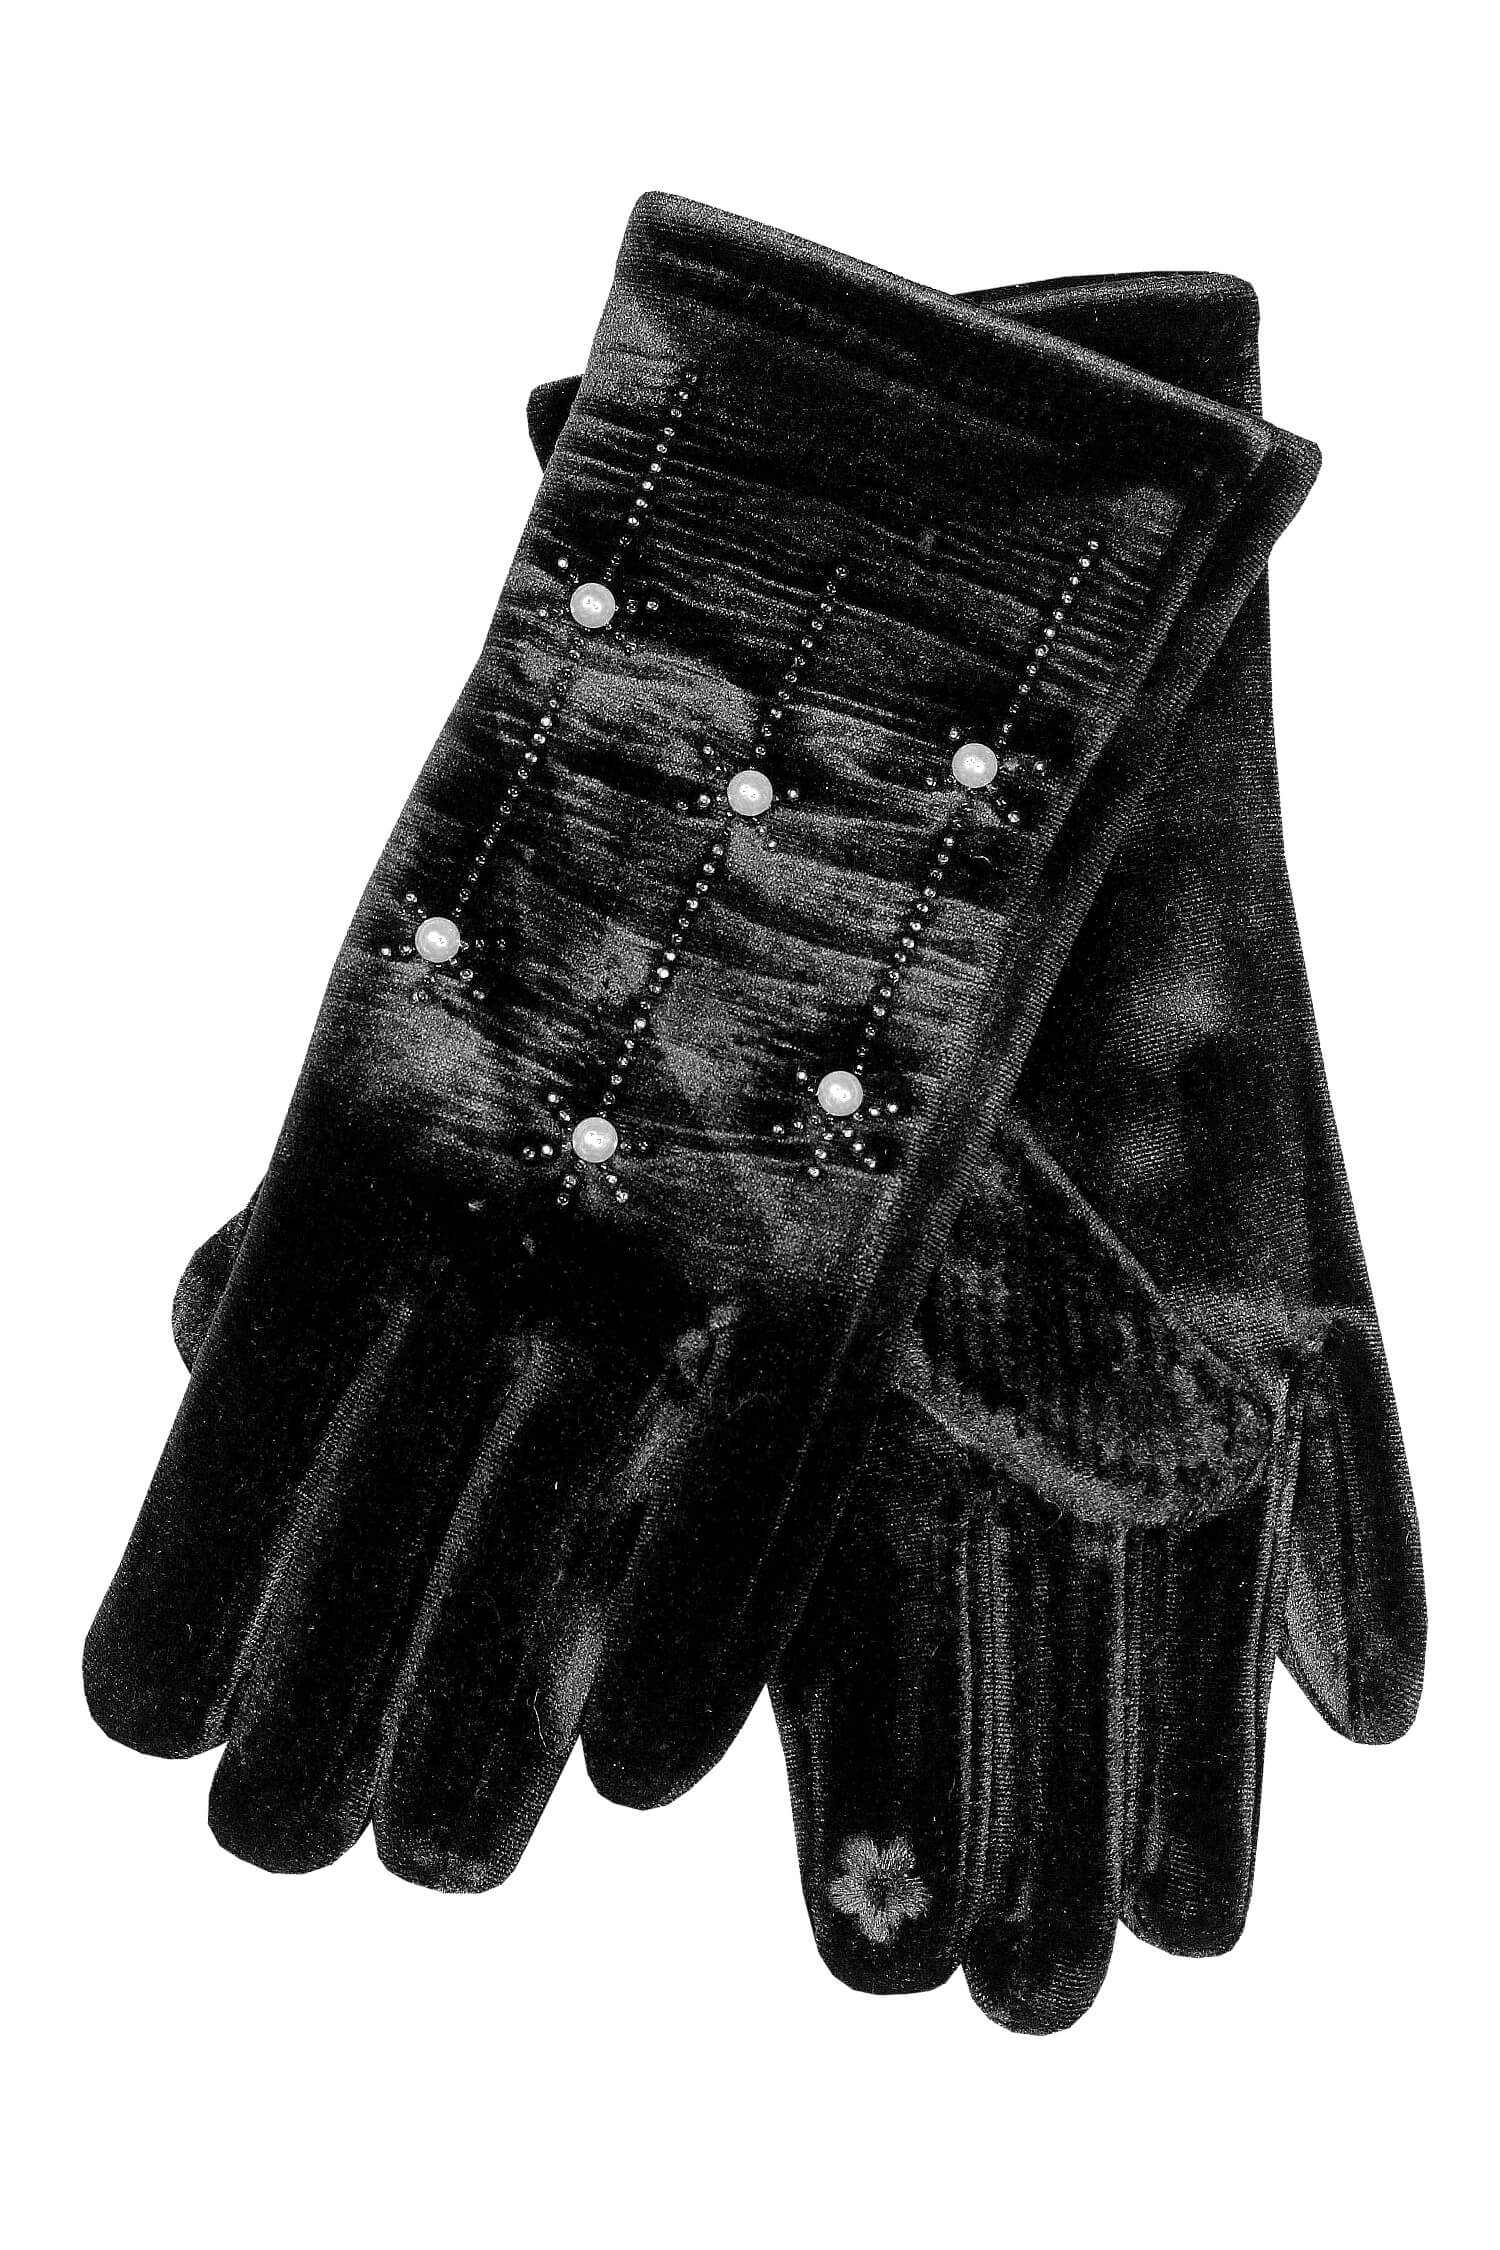 Sofia Nera dámské rukavice na podzim L černá